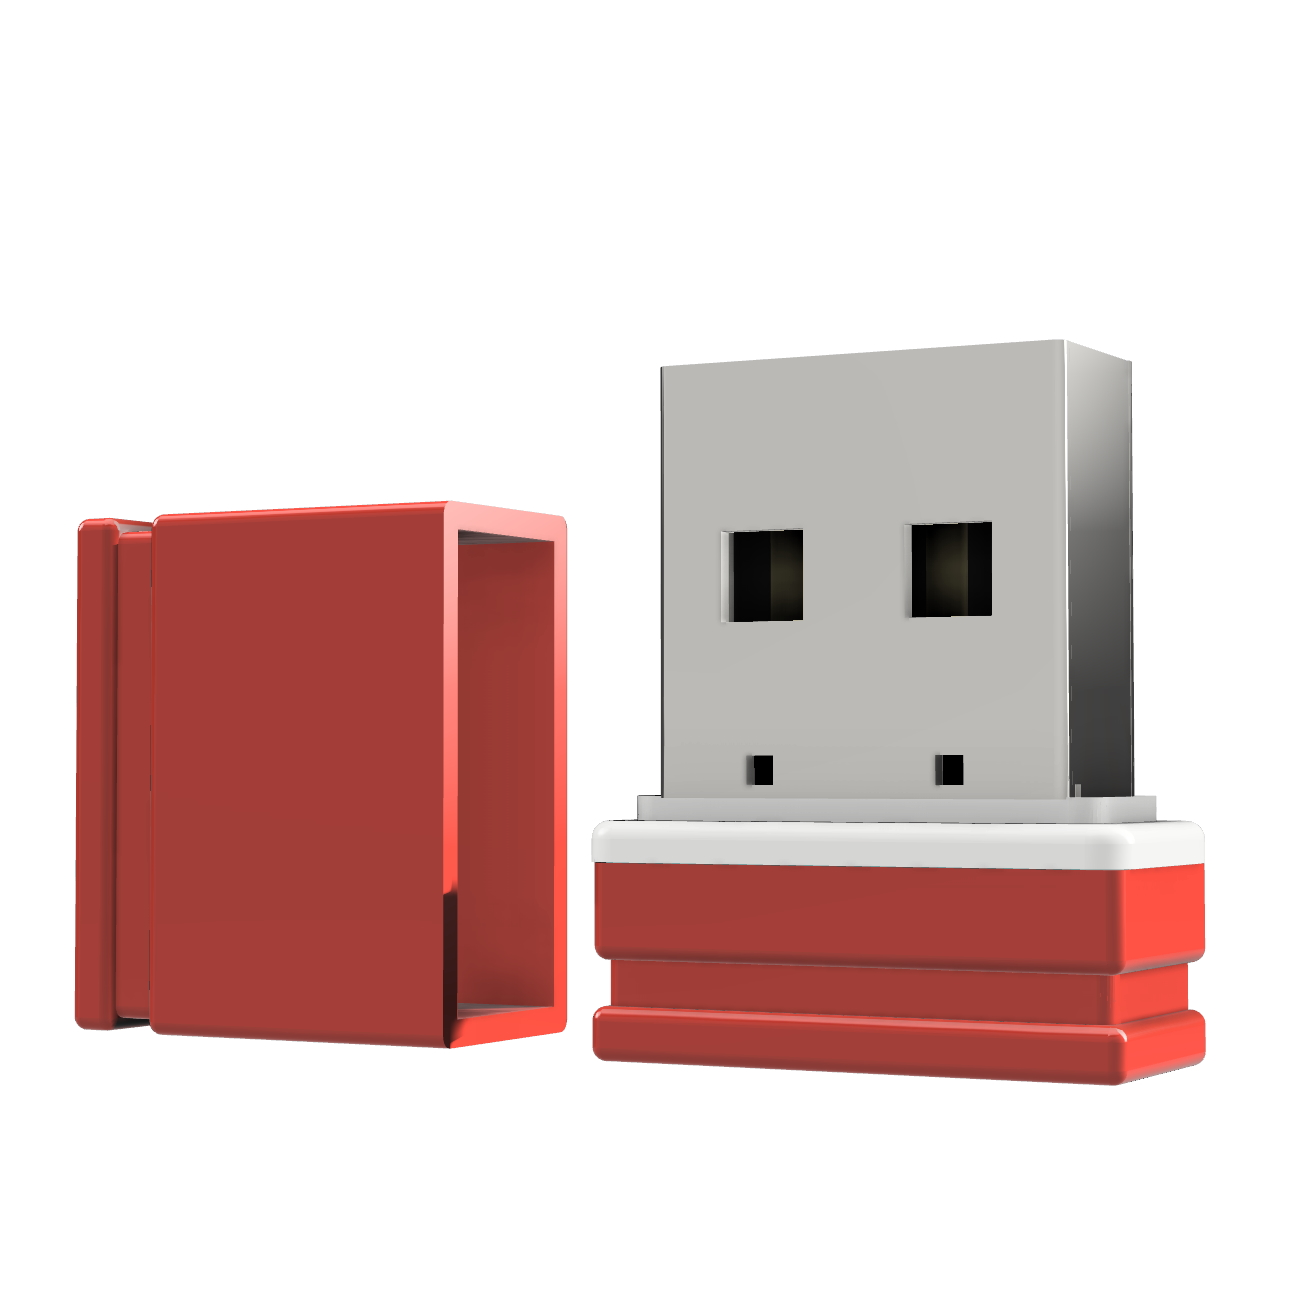 ®ULTRA 64 (Rot/Weiss, Mini GB) USB P1 USB-Stick GERMANY